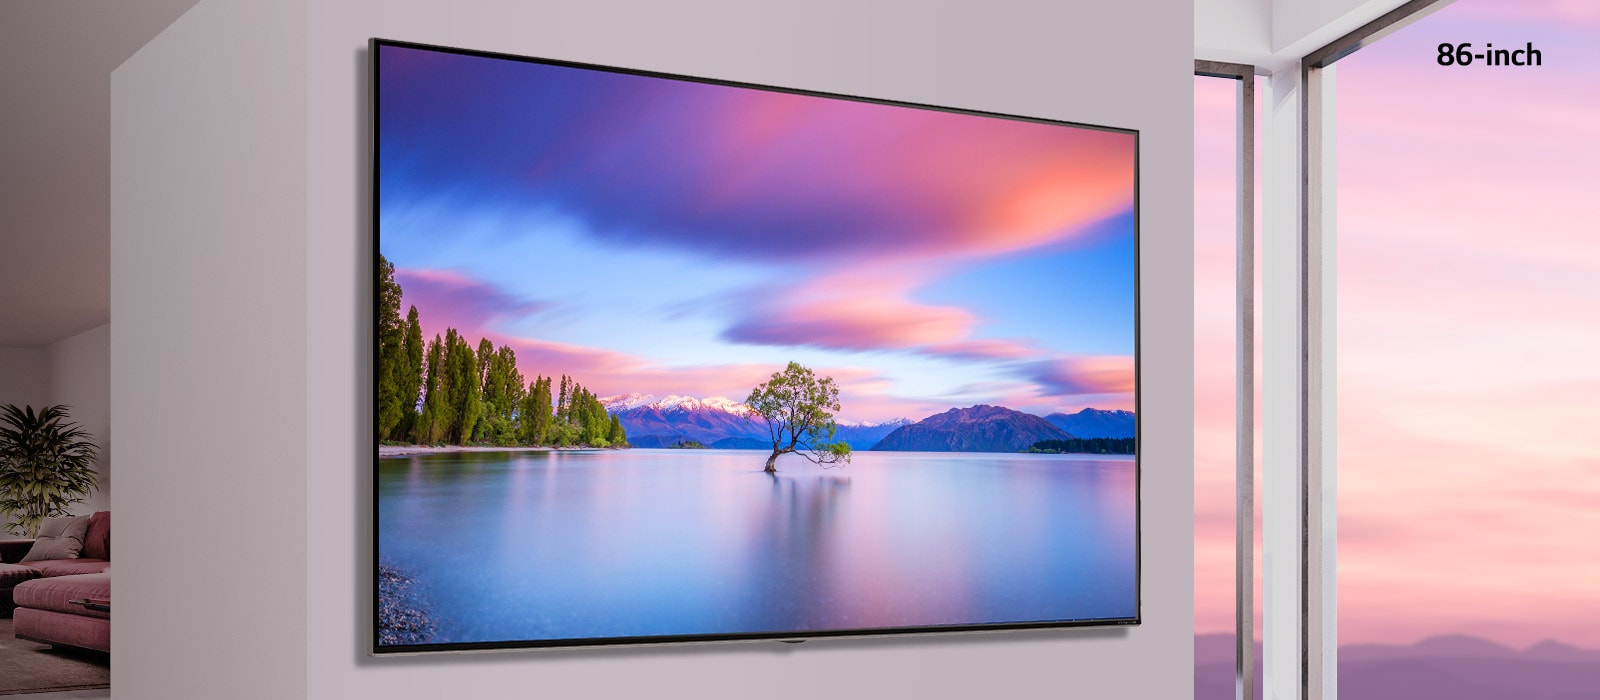 Екран, показващ телевизор с плосък екран, монтиран на бяла стена. Когато изображението се превърта от едната страна към другата, то се променя от 55-инчов на 86-инчов екран.